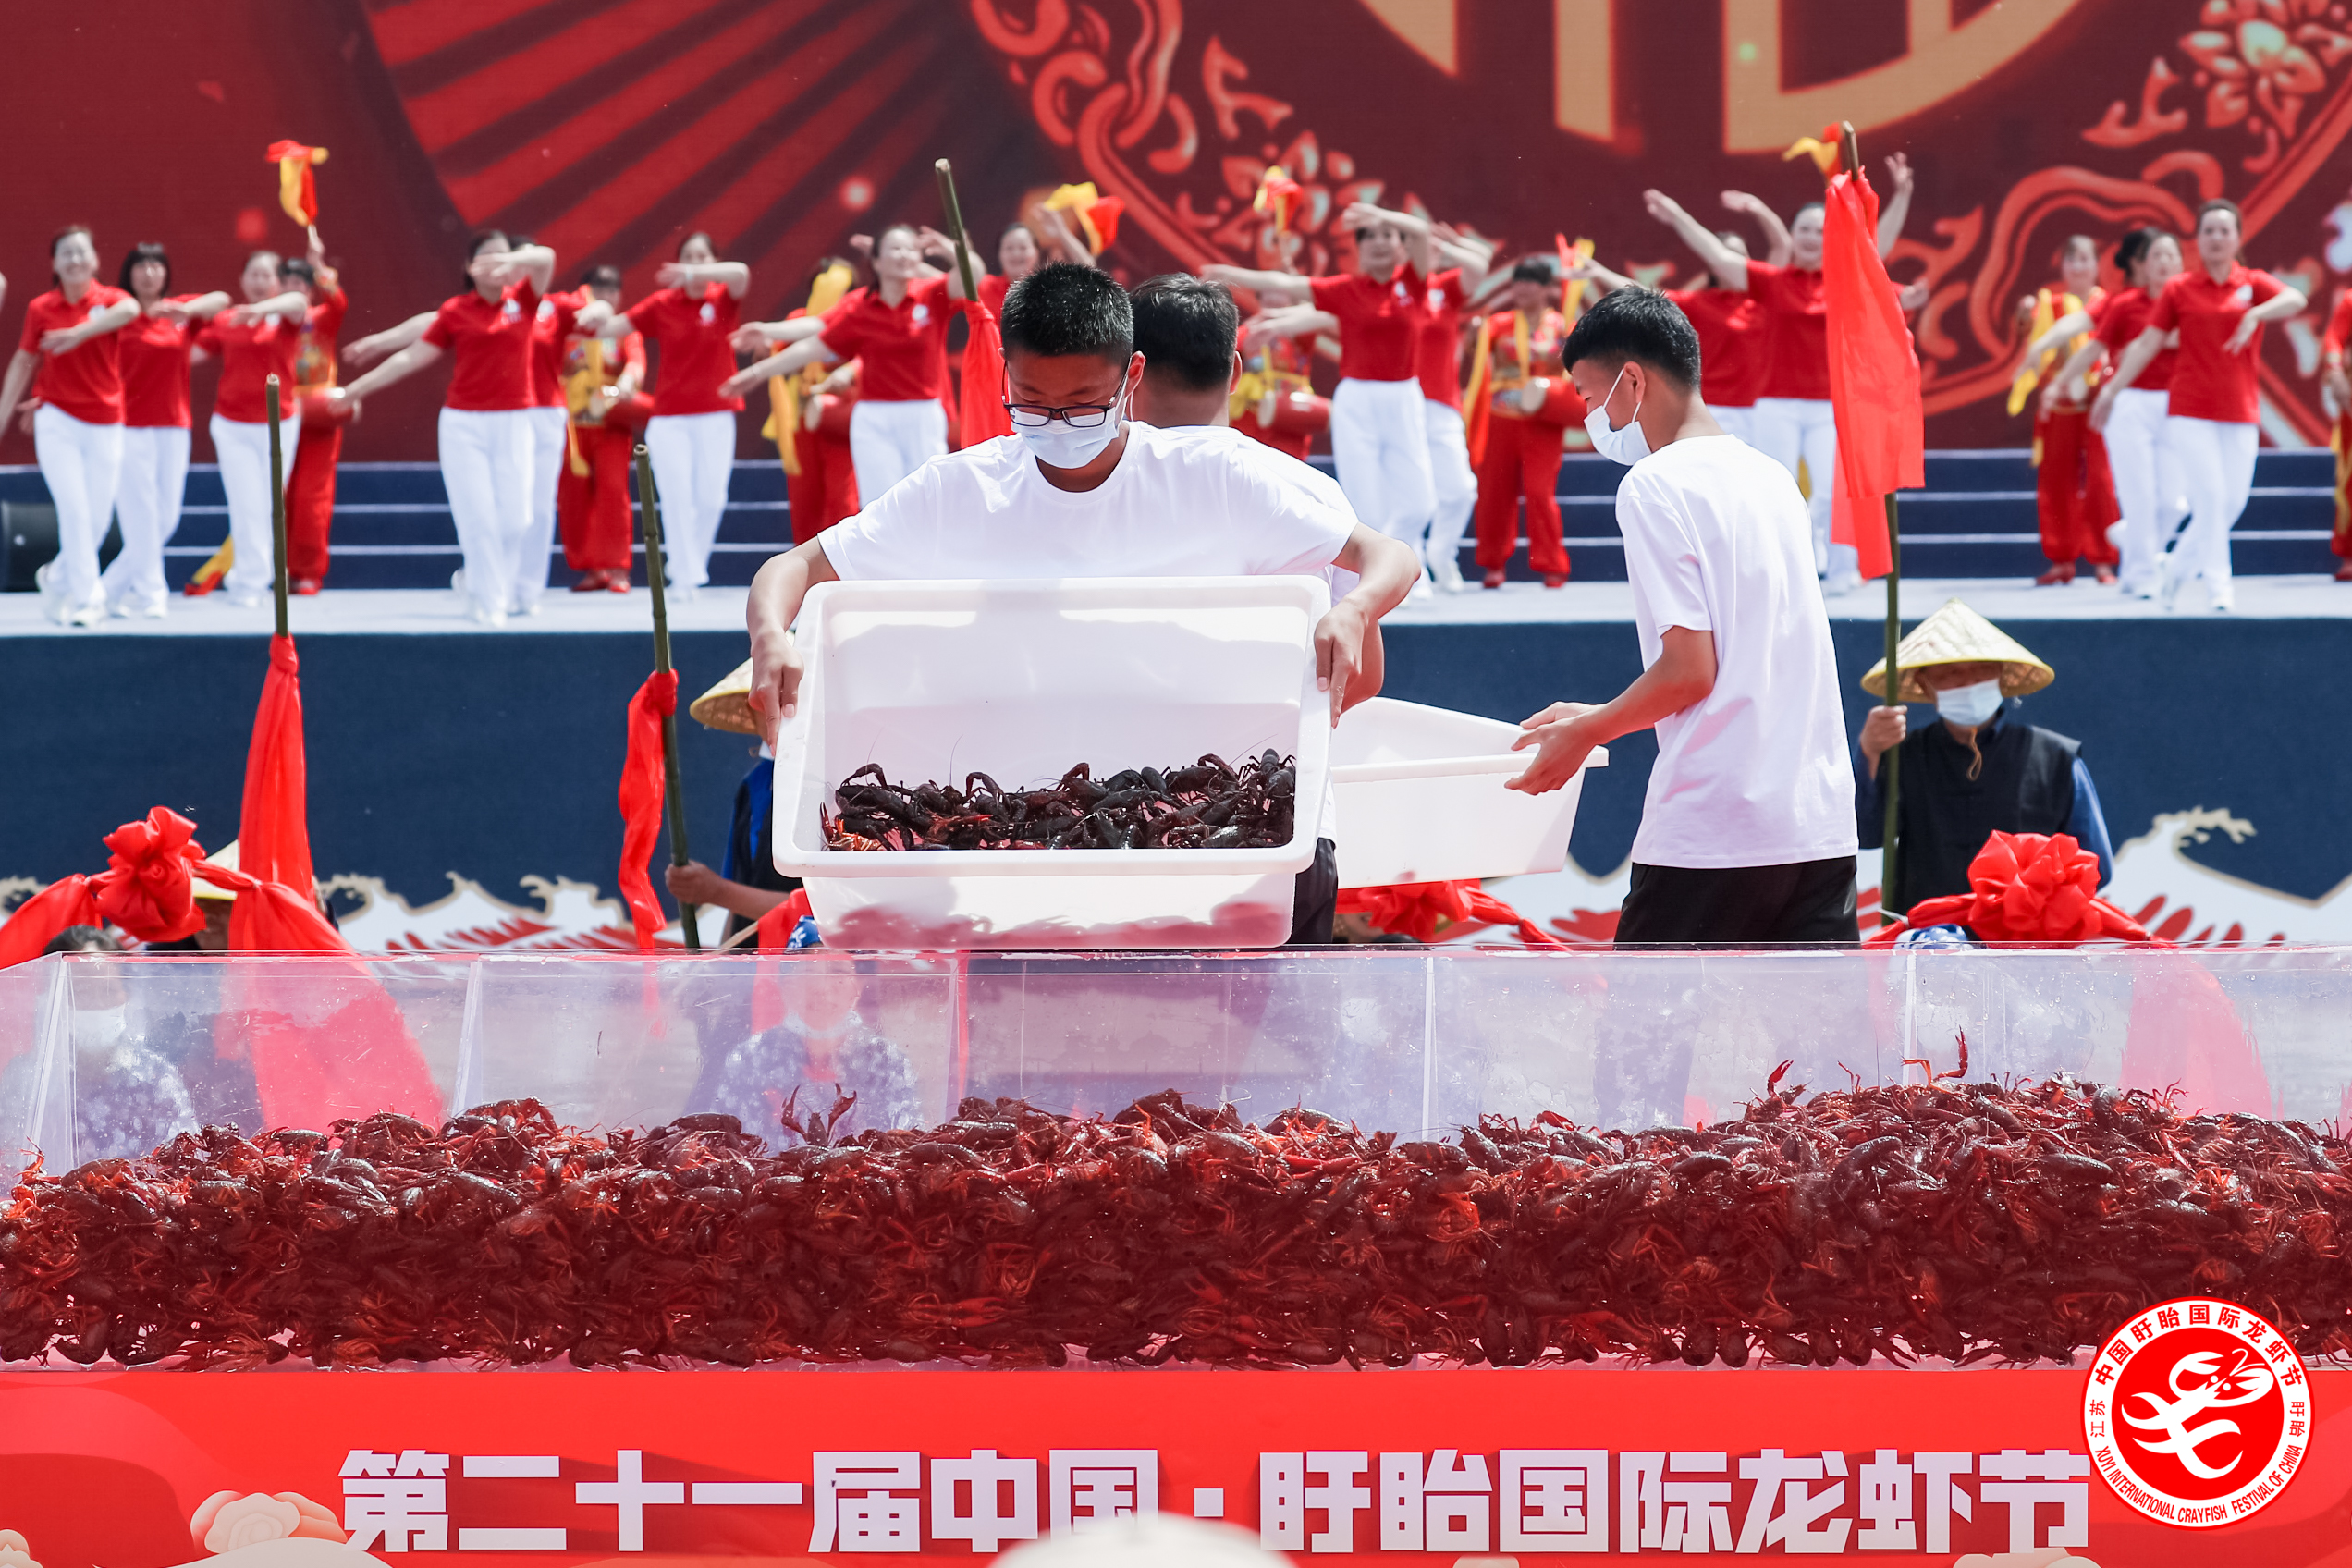 200斤头网虾被拍出256000元!第21届中国·盱眙国际龙虾节开幕